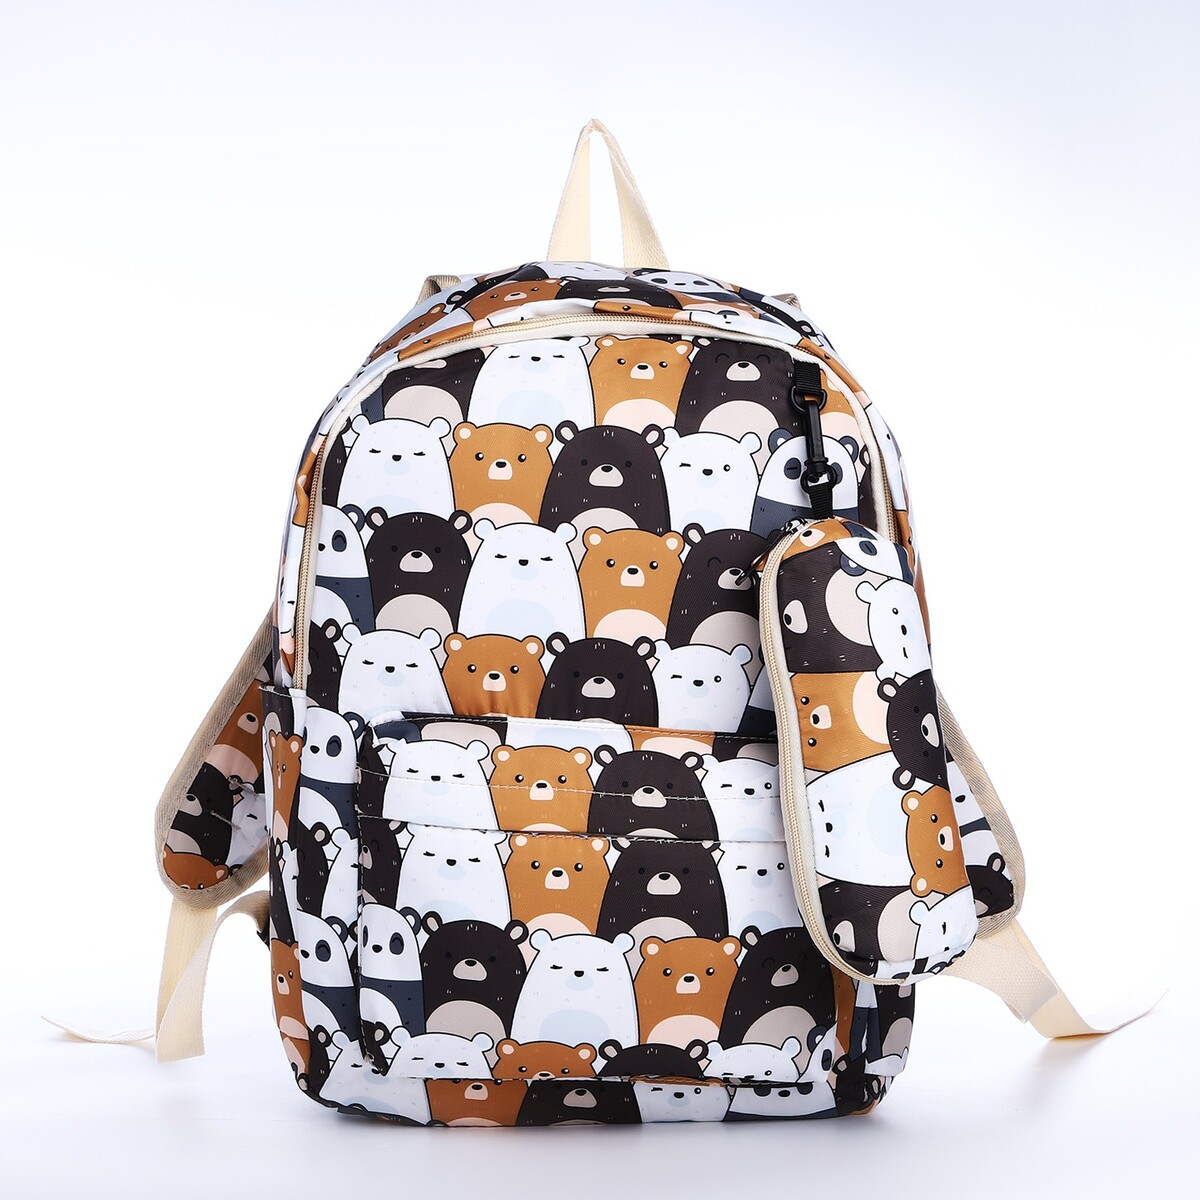 Рюкзак школьный из текстиля на молнии, 3 кармана, пенал, цвет белый/коричневый рюкзак nuovita capcap via marrone коричневый